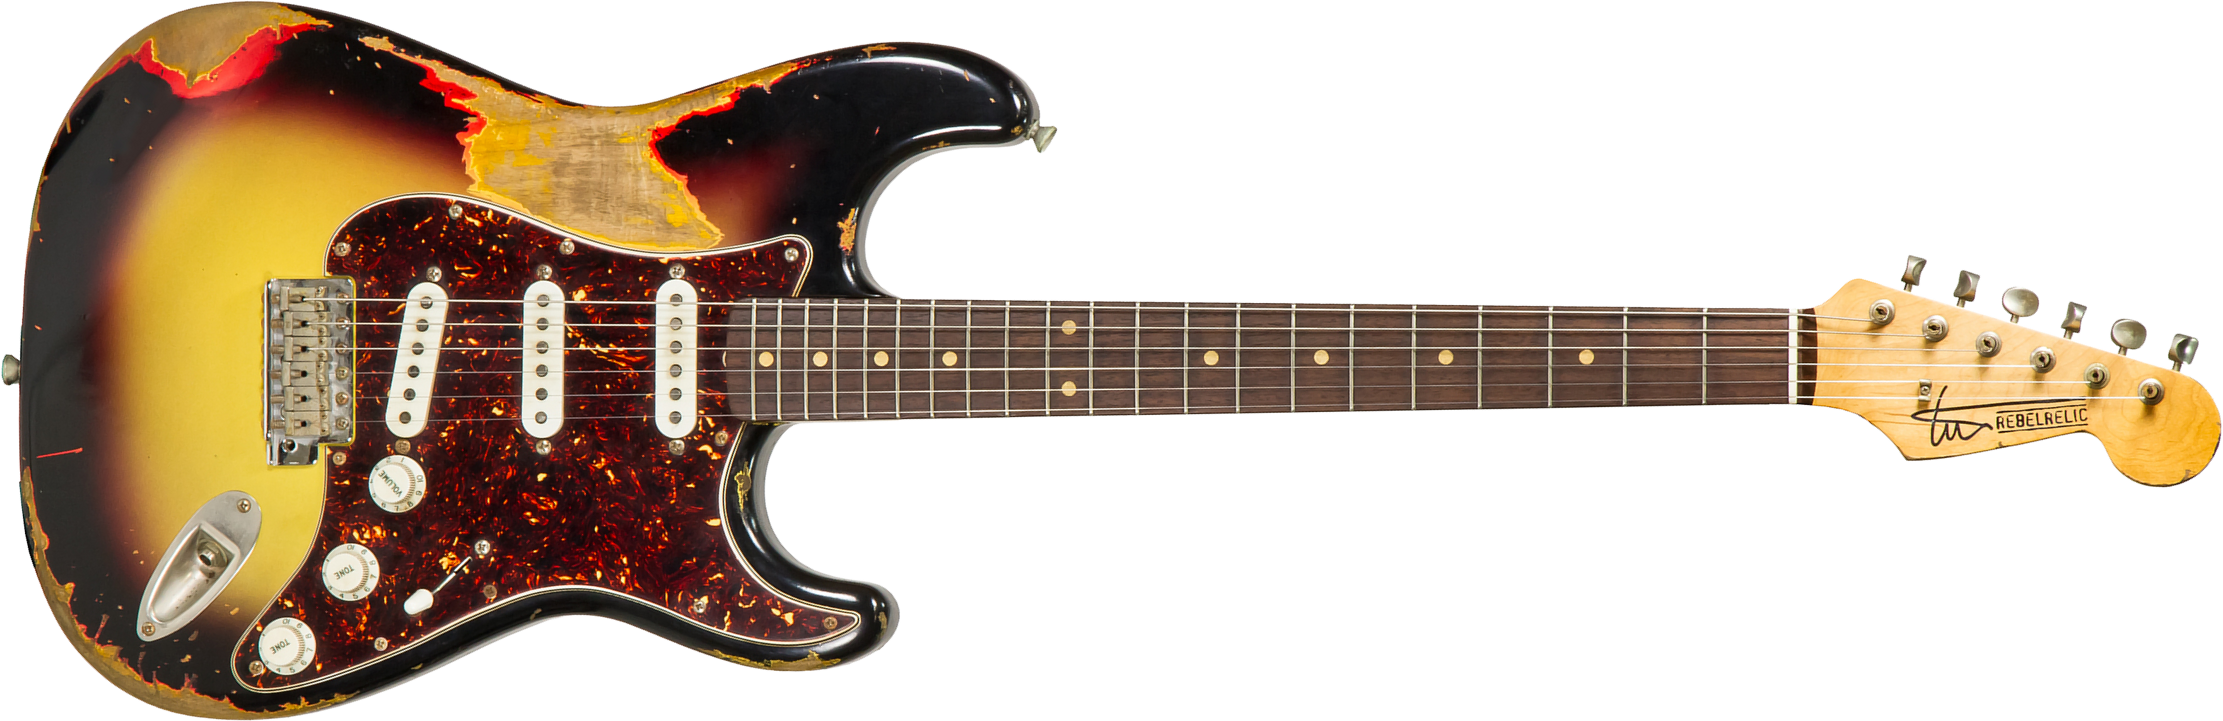 Rebelrelic S-series 62 Rw #62110 - Heavy Aging 3-tone Sunburst - E-Gitarre in Str-Form - Main picture